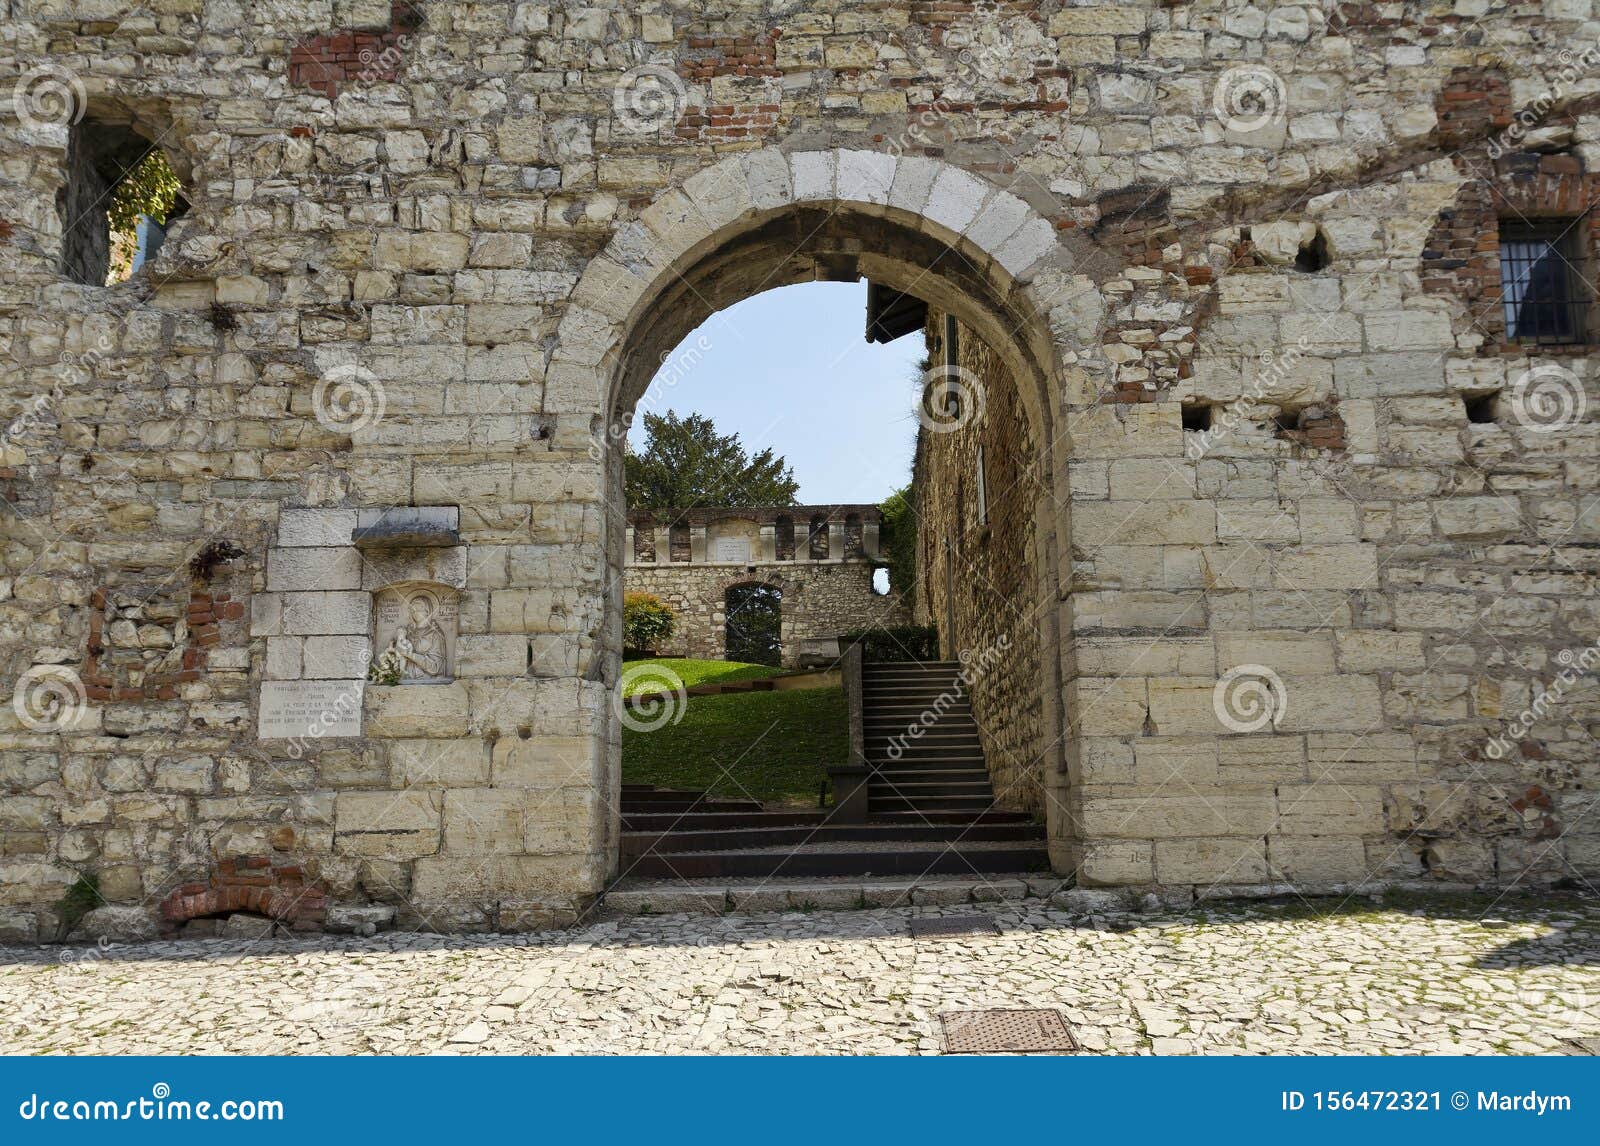 gateway to luigi marzoli weapons museum in brescia castle